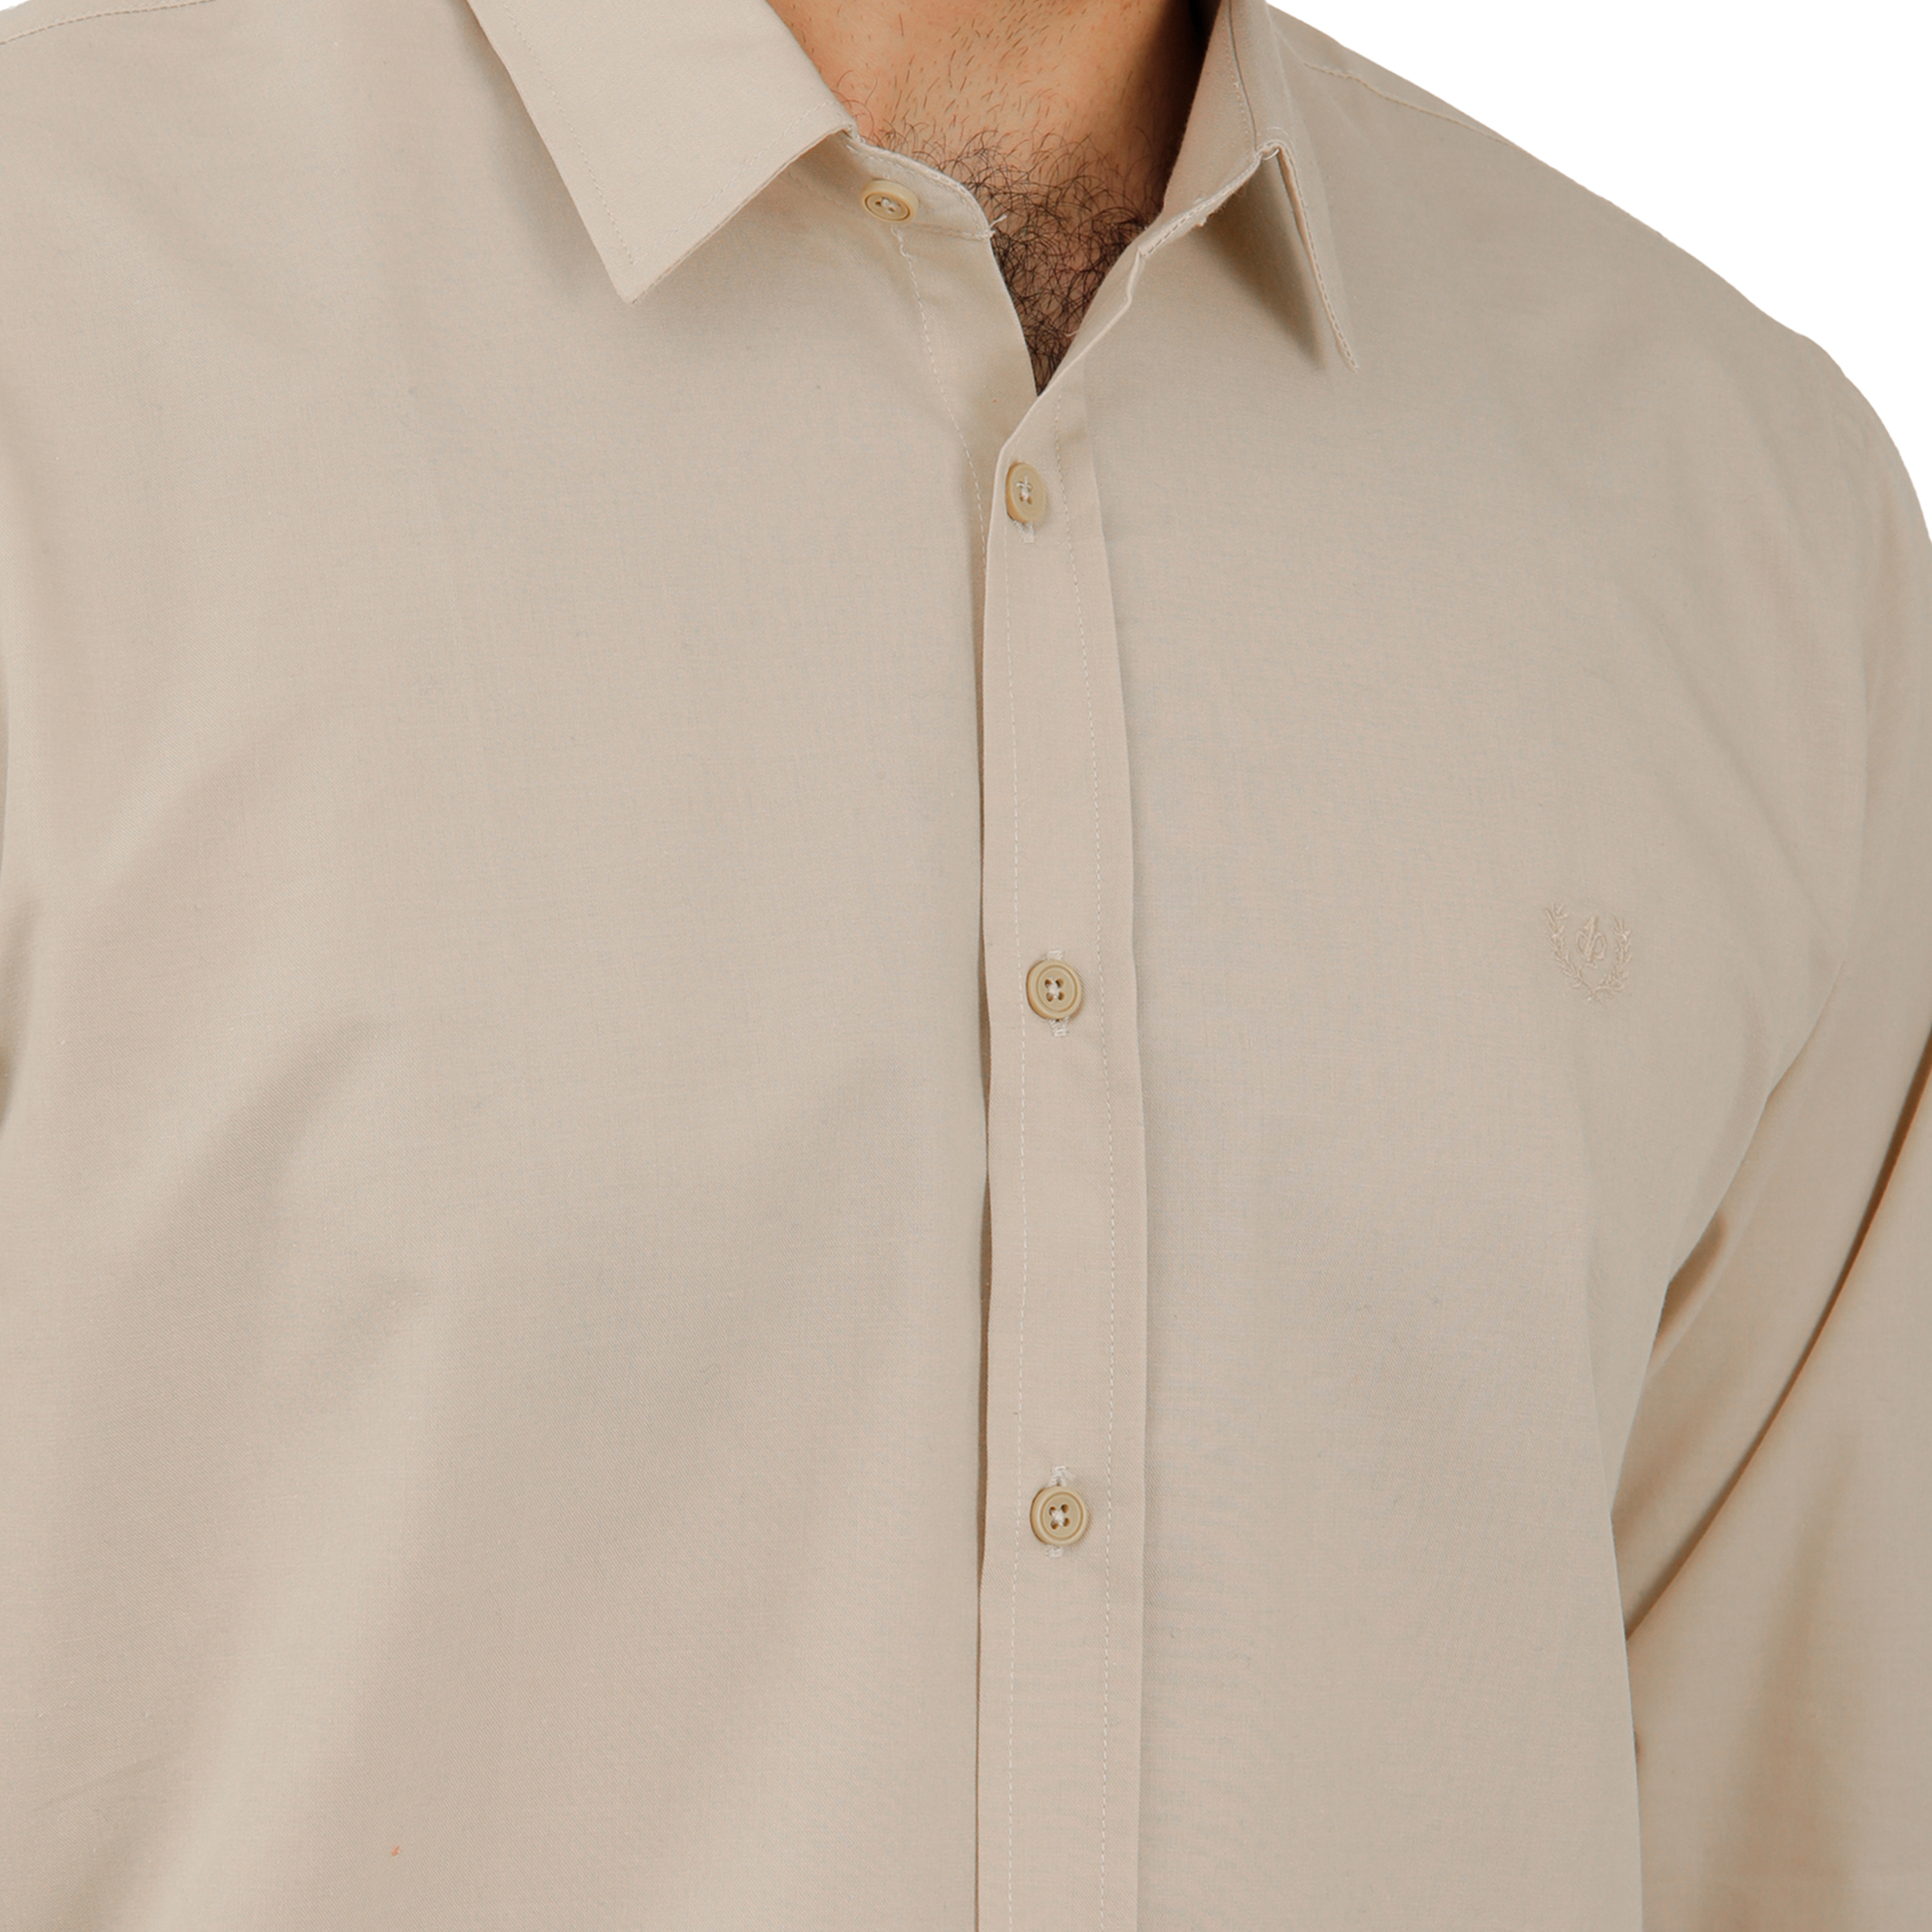 پیراهن آستین بلند مردانه پاتن جامه مدل 102721020242122 رنگ کرم -  - 4